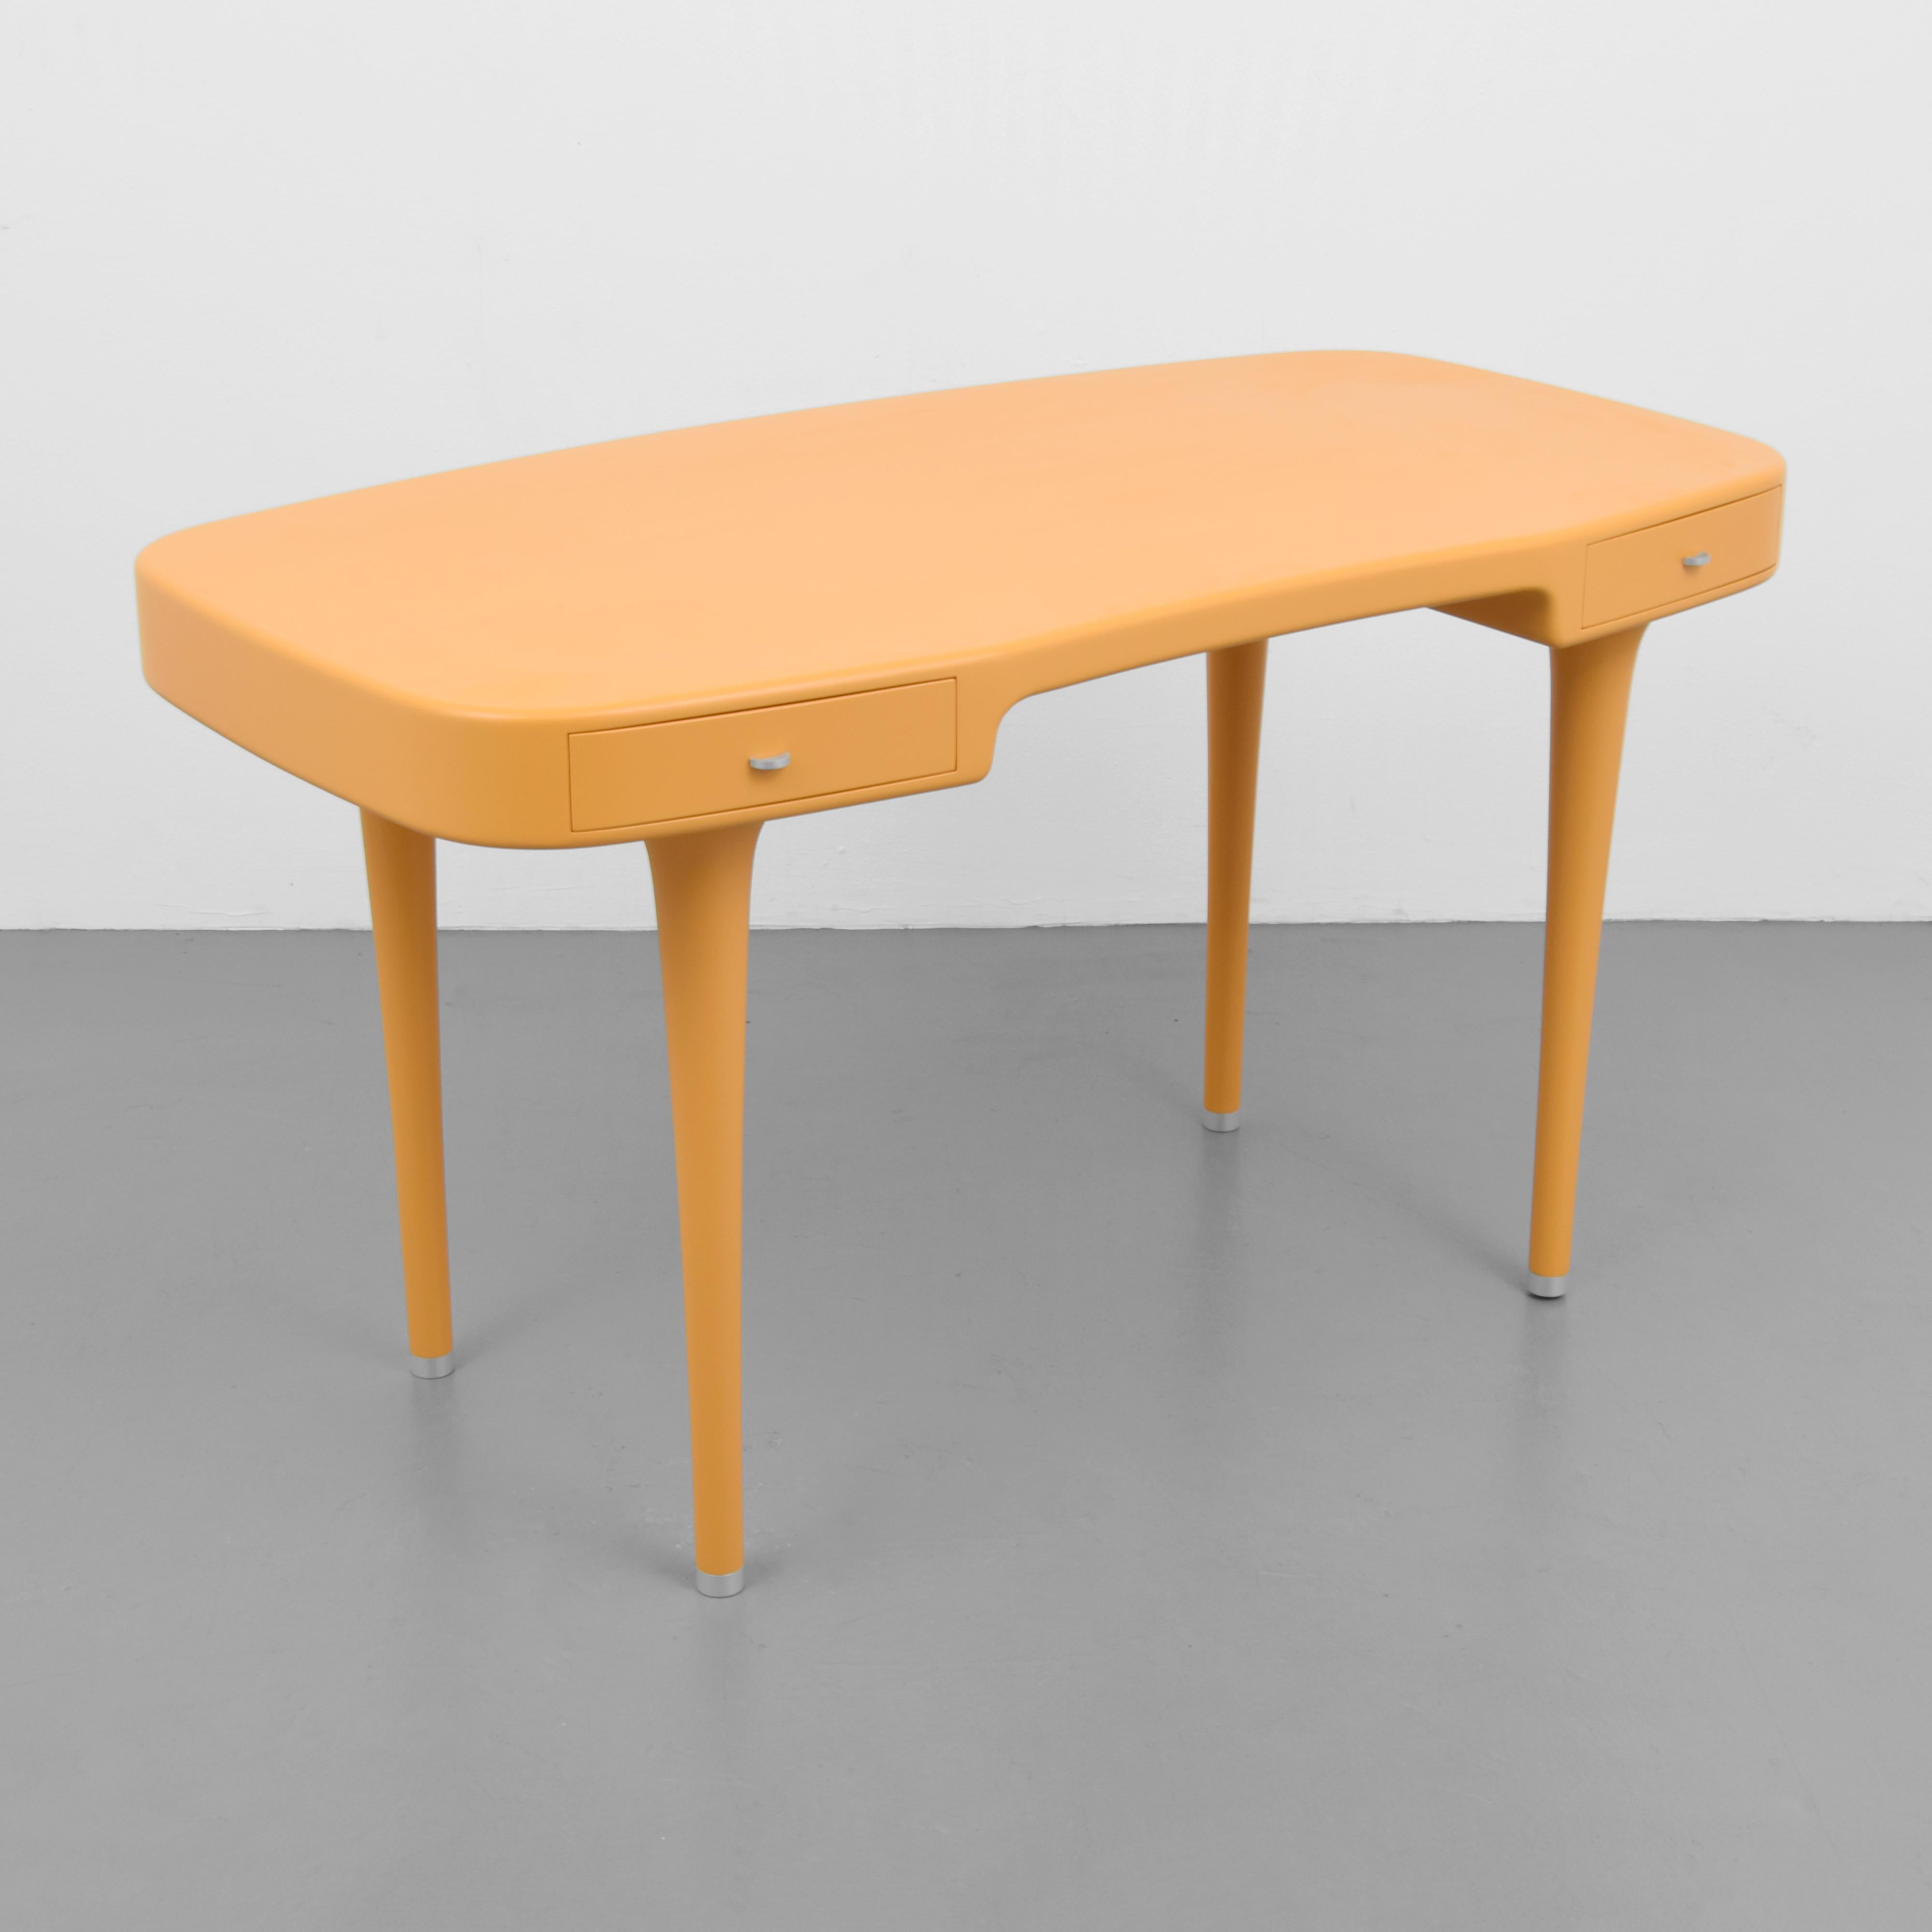 Italian Marc Newson “Riga” Desk For Sale